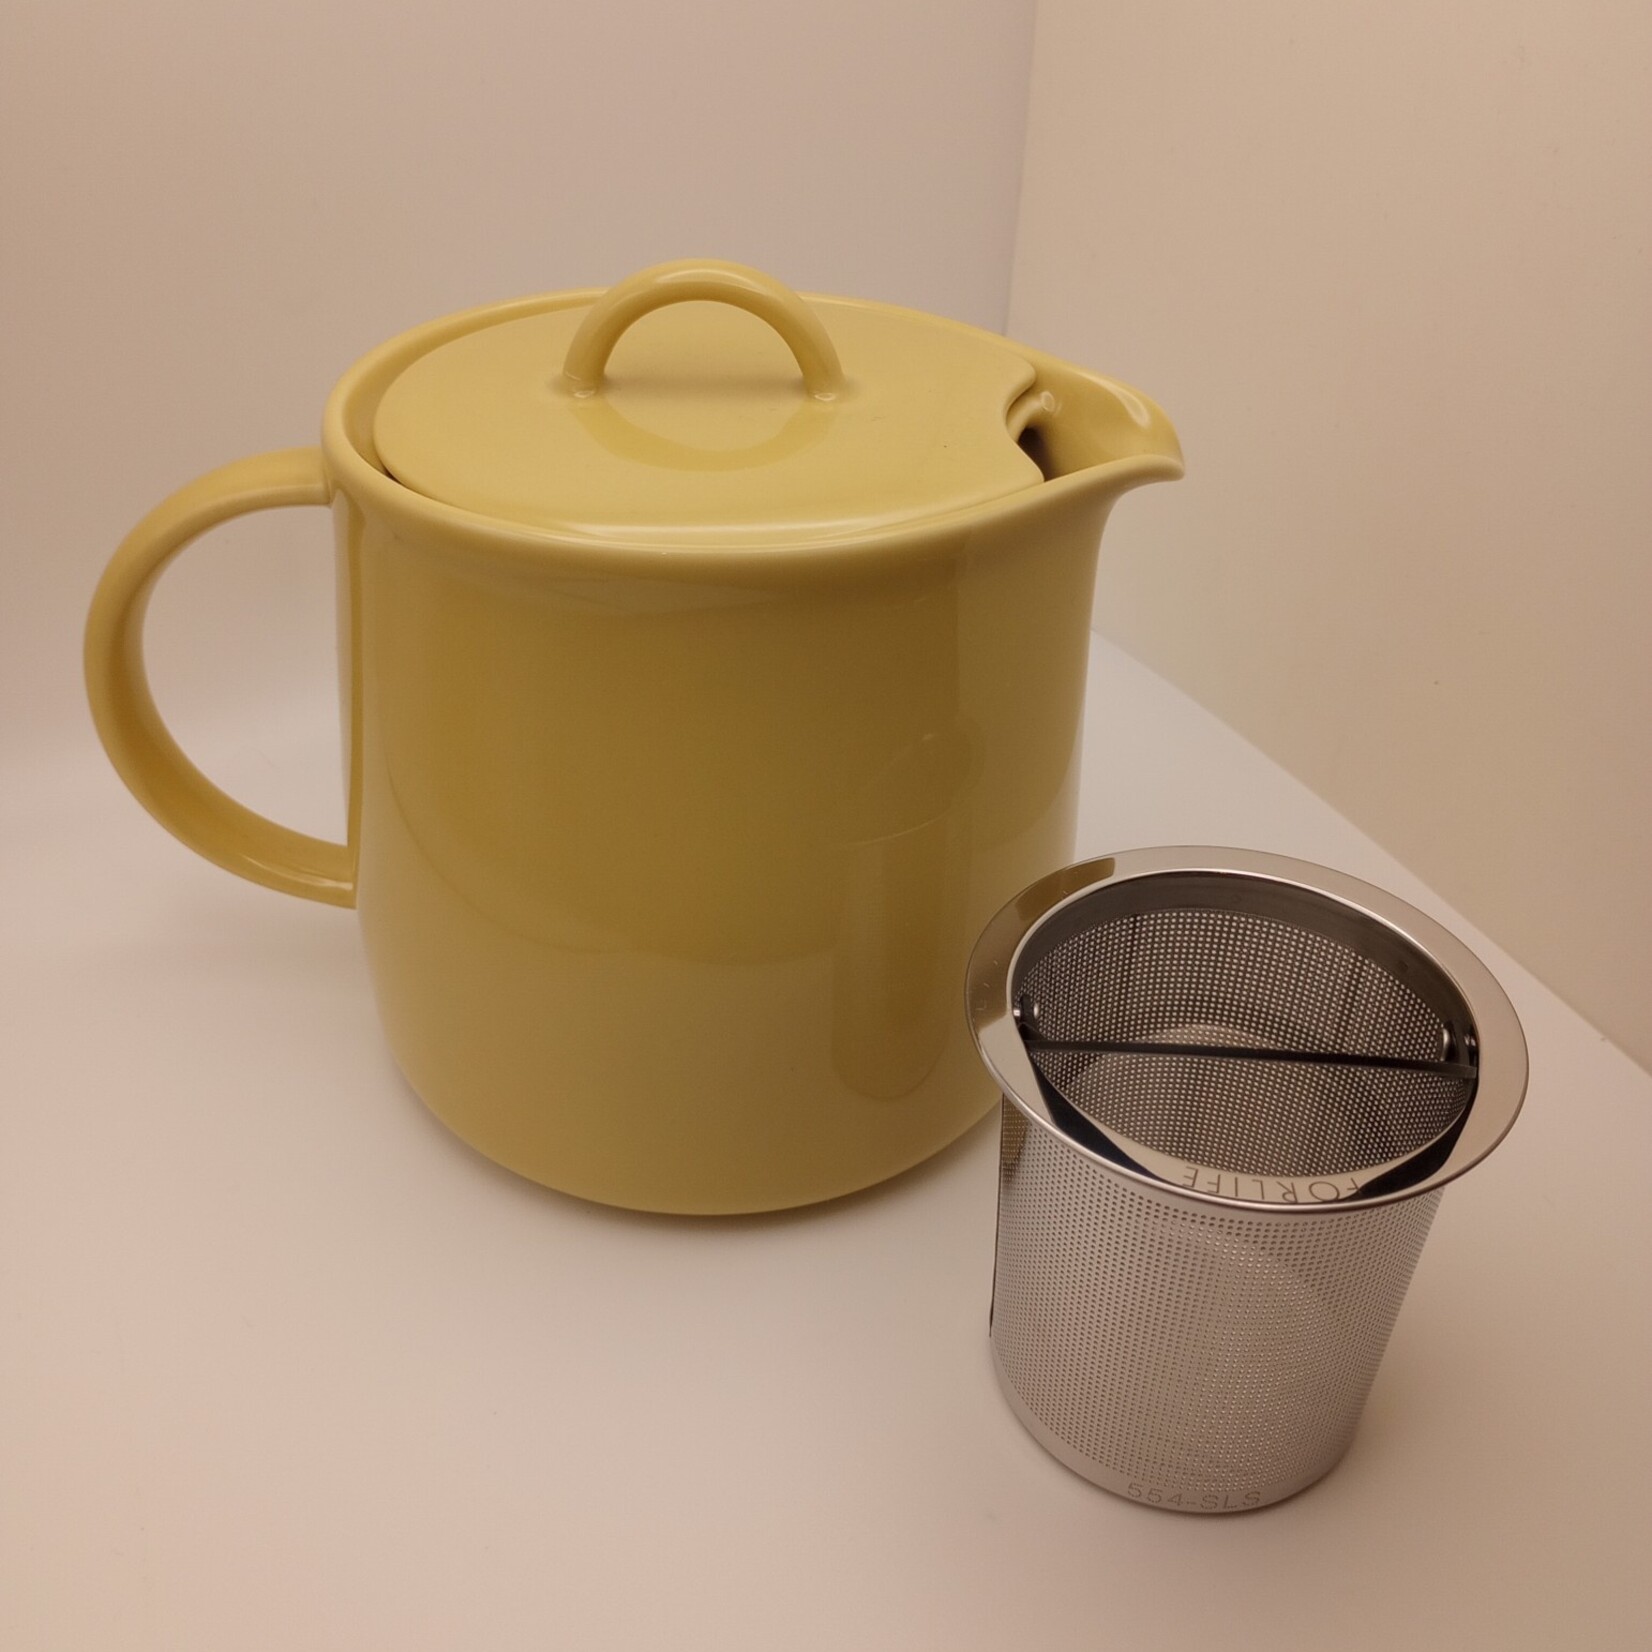 D’Anjou Tea Pot with Infuser